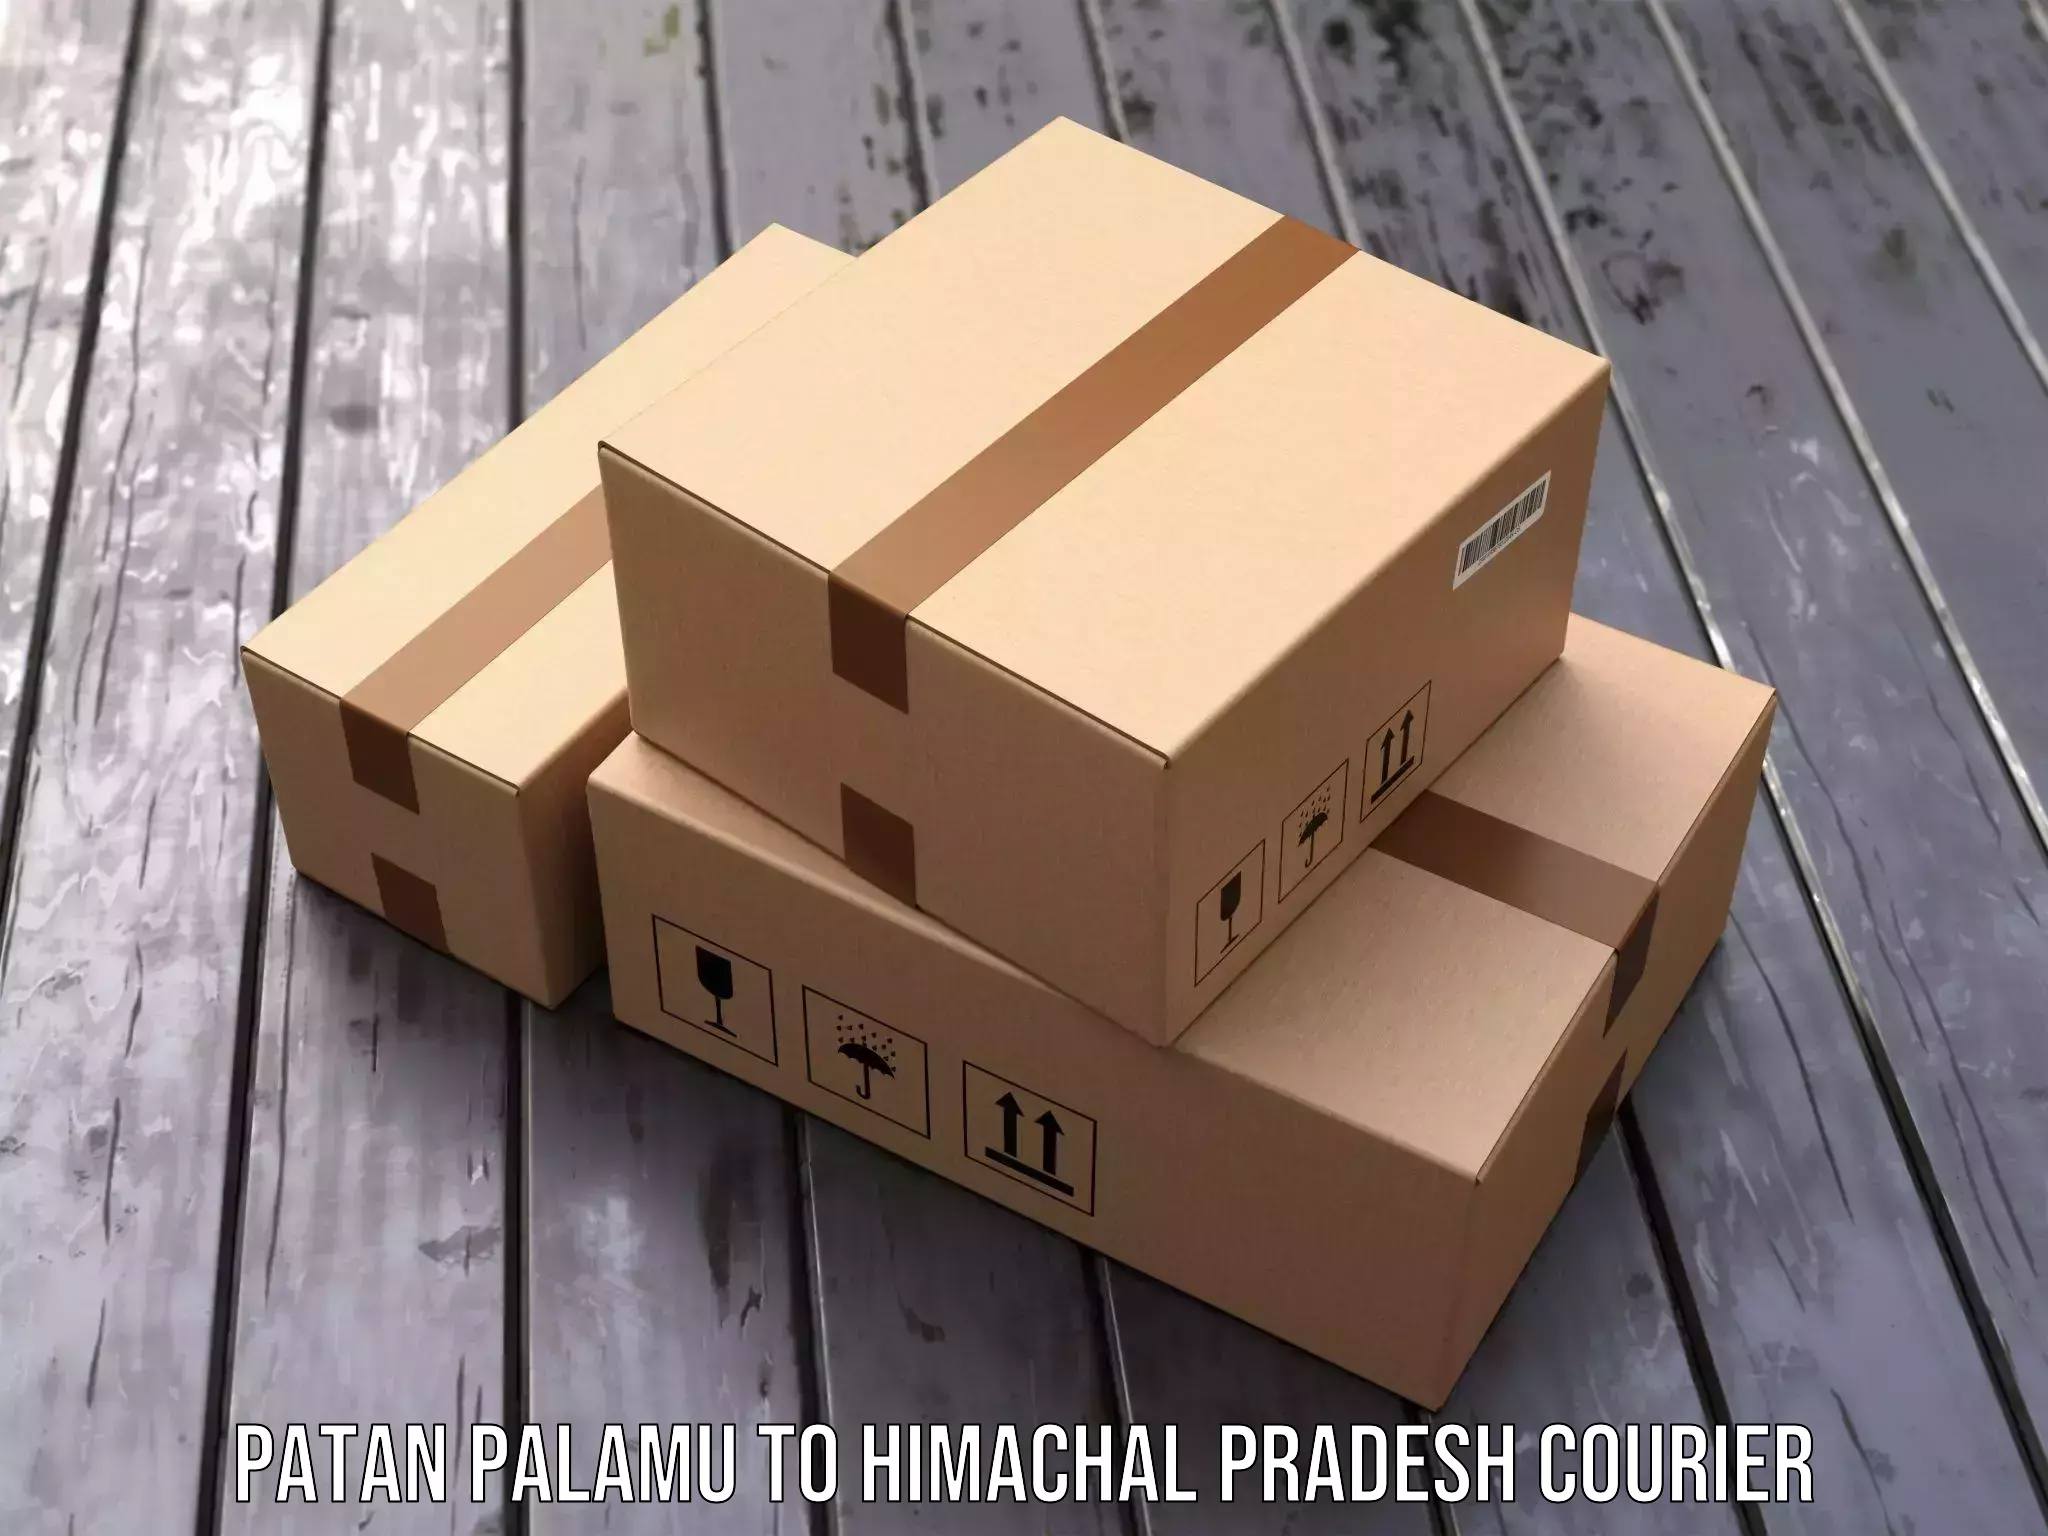 Customized delivery solutions Patan Palamu to Jukhala